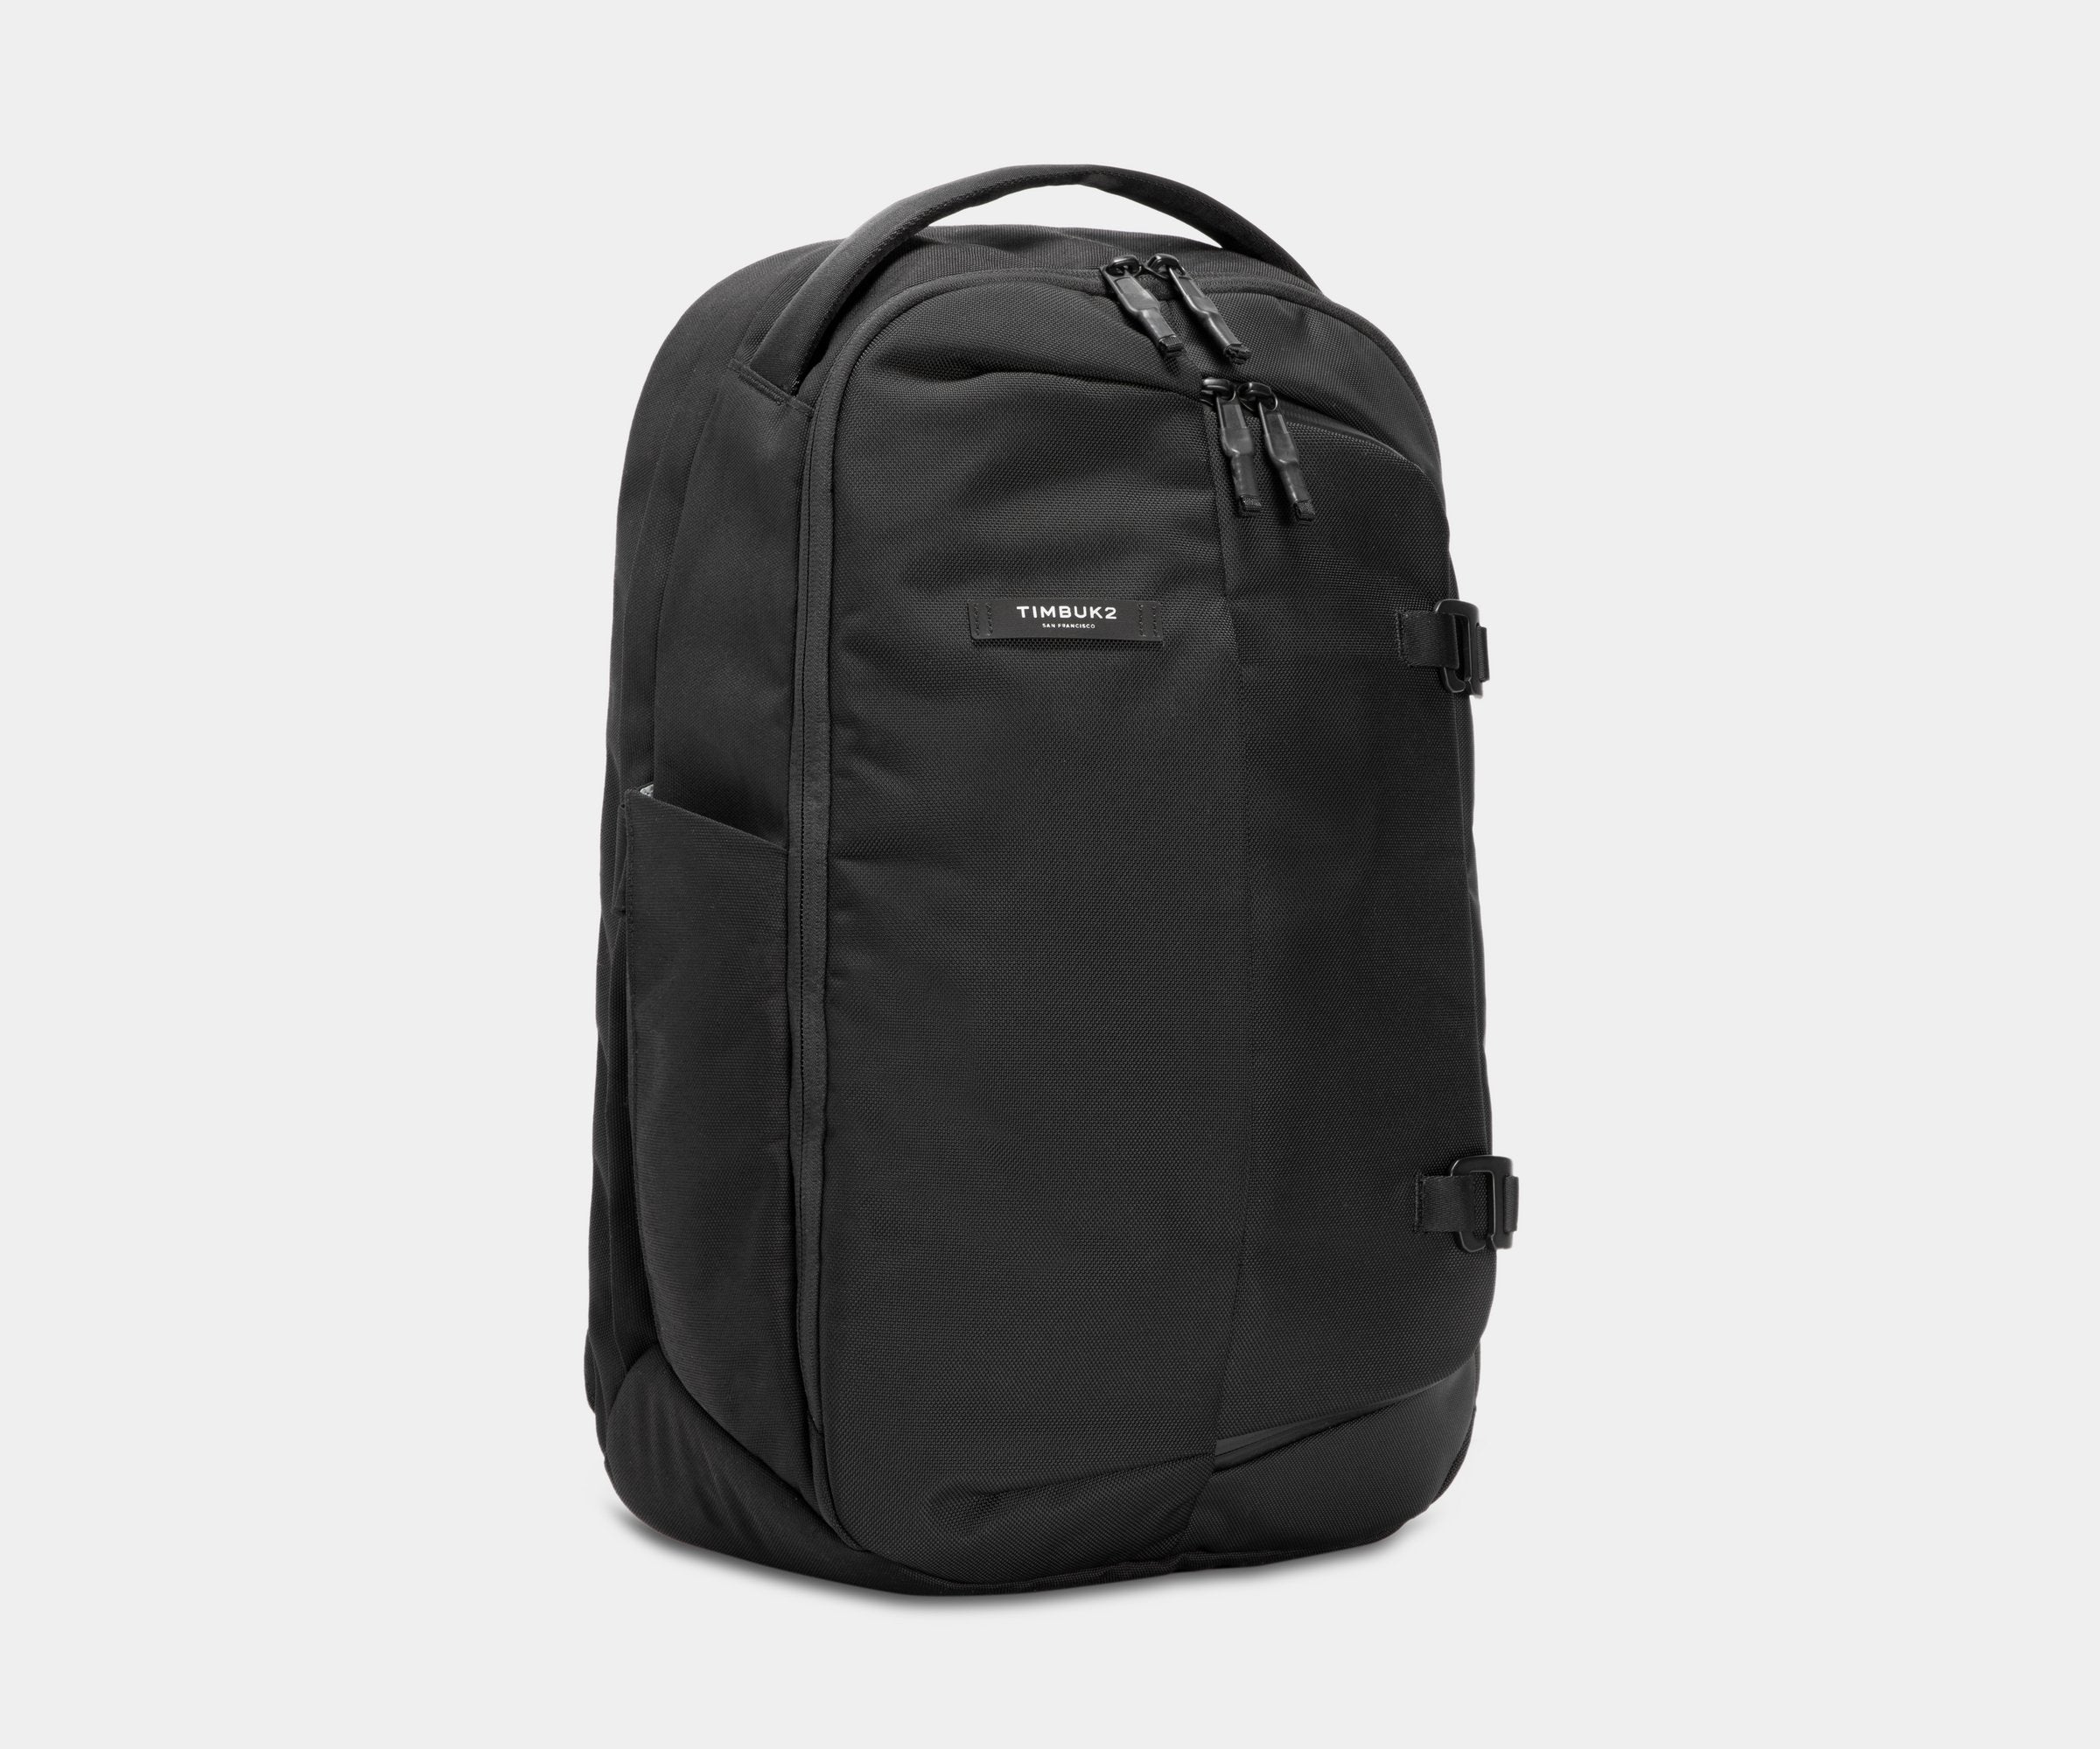 Timbuk2 Never Check Expandable Backpack | Warranty | Timbuk2bags